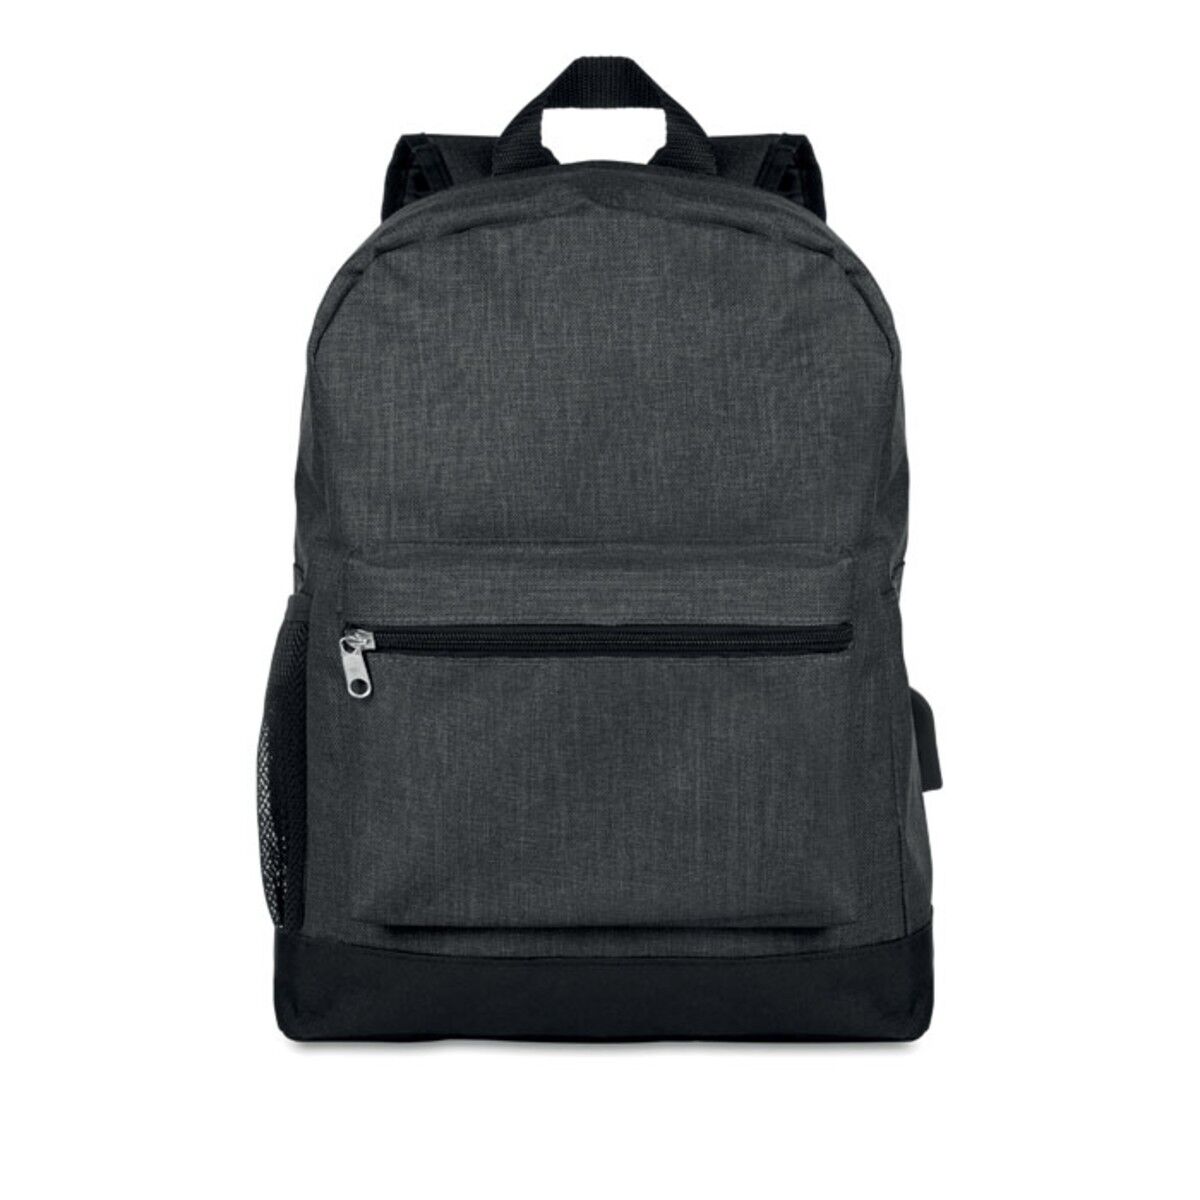 RFID Backpack in Black